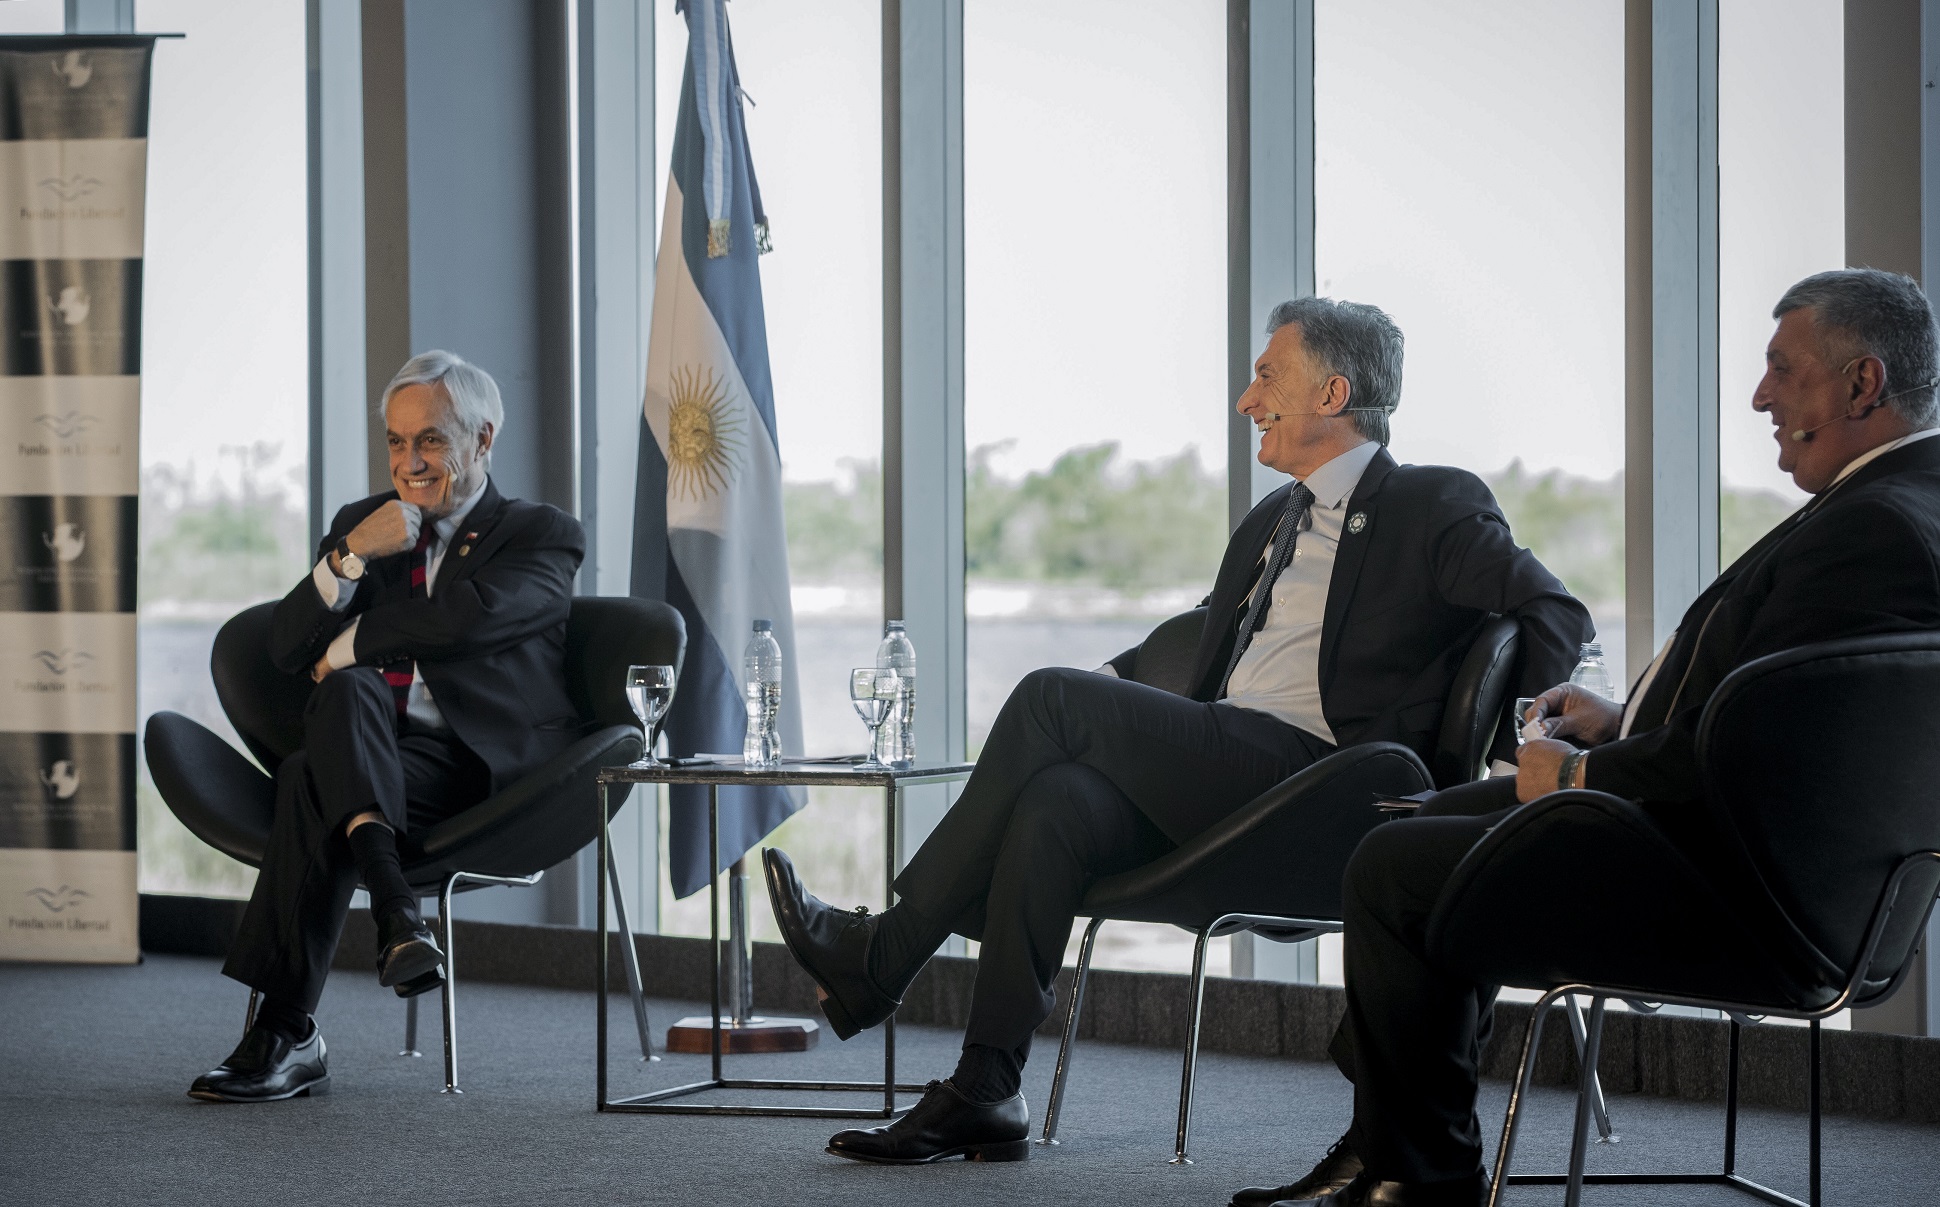 Confirmando este rumbo la Argentina va a ingresar en una historia nueva que contagia esperanza